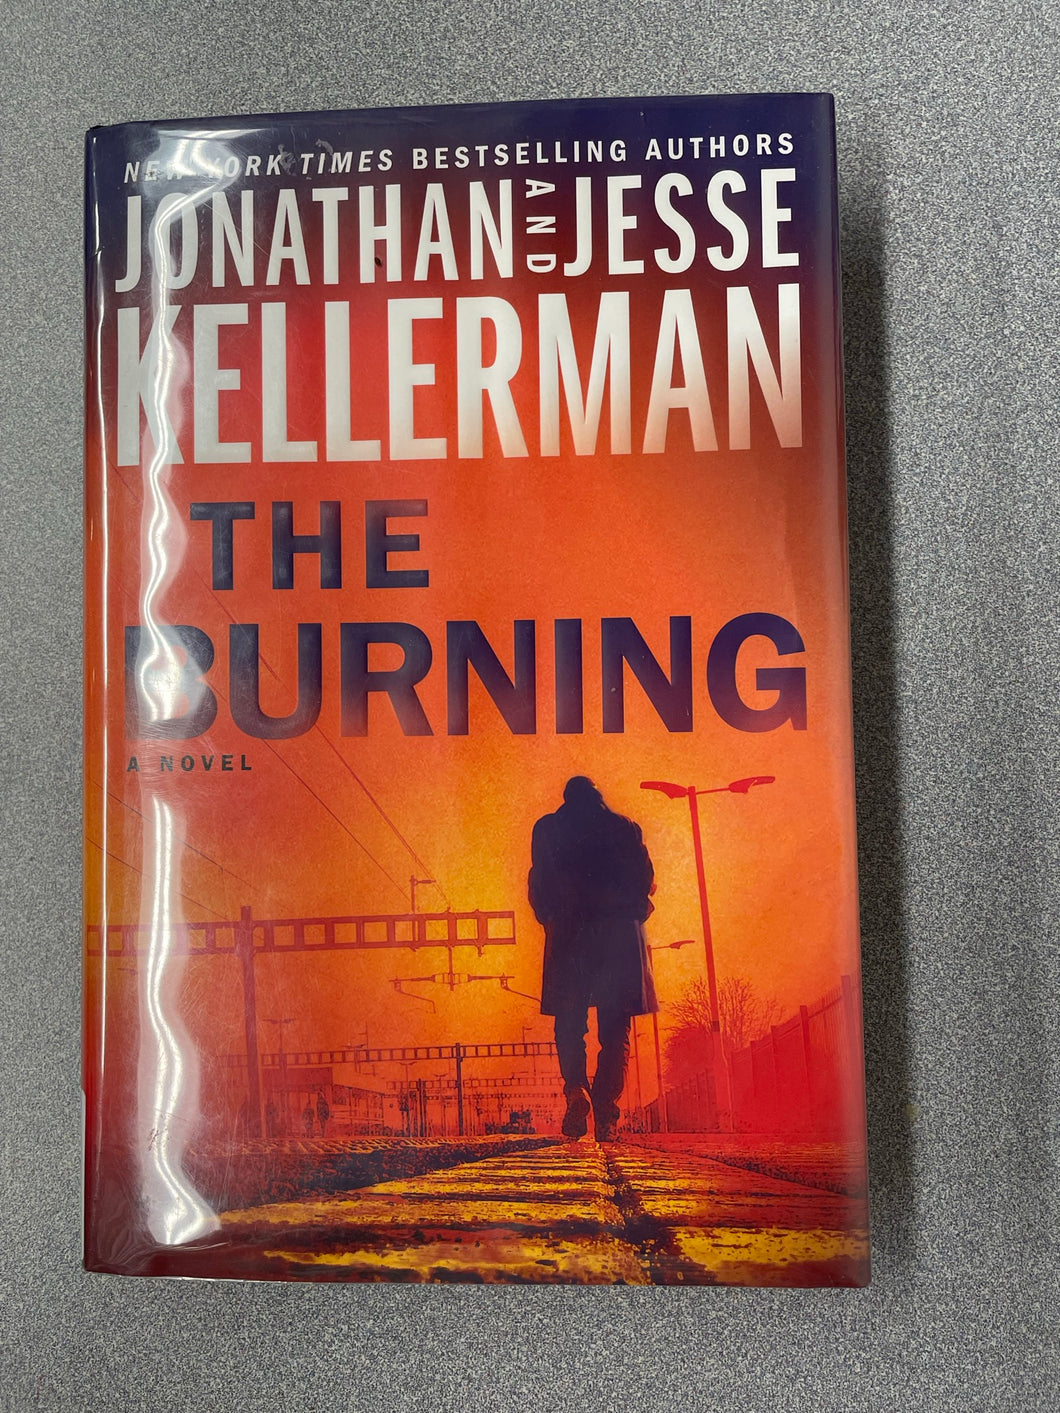 Kellerman, Jonathan and Jesse Kellerman, The Burning [2021] MY 6/23